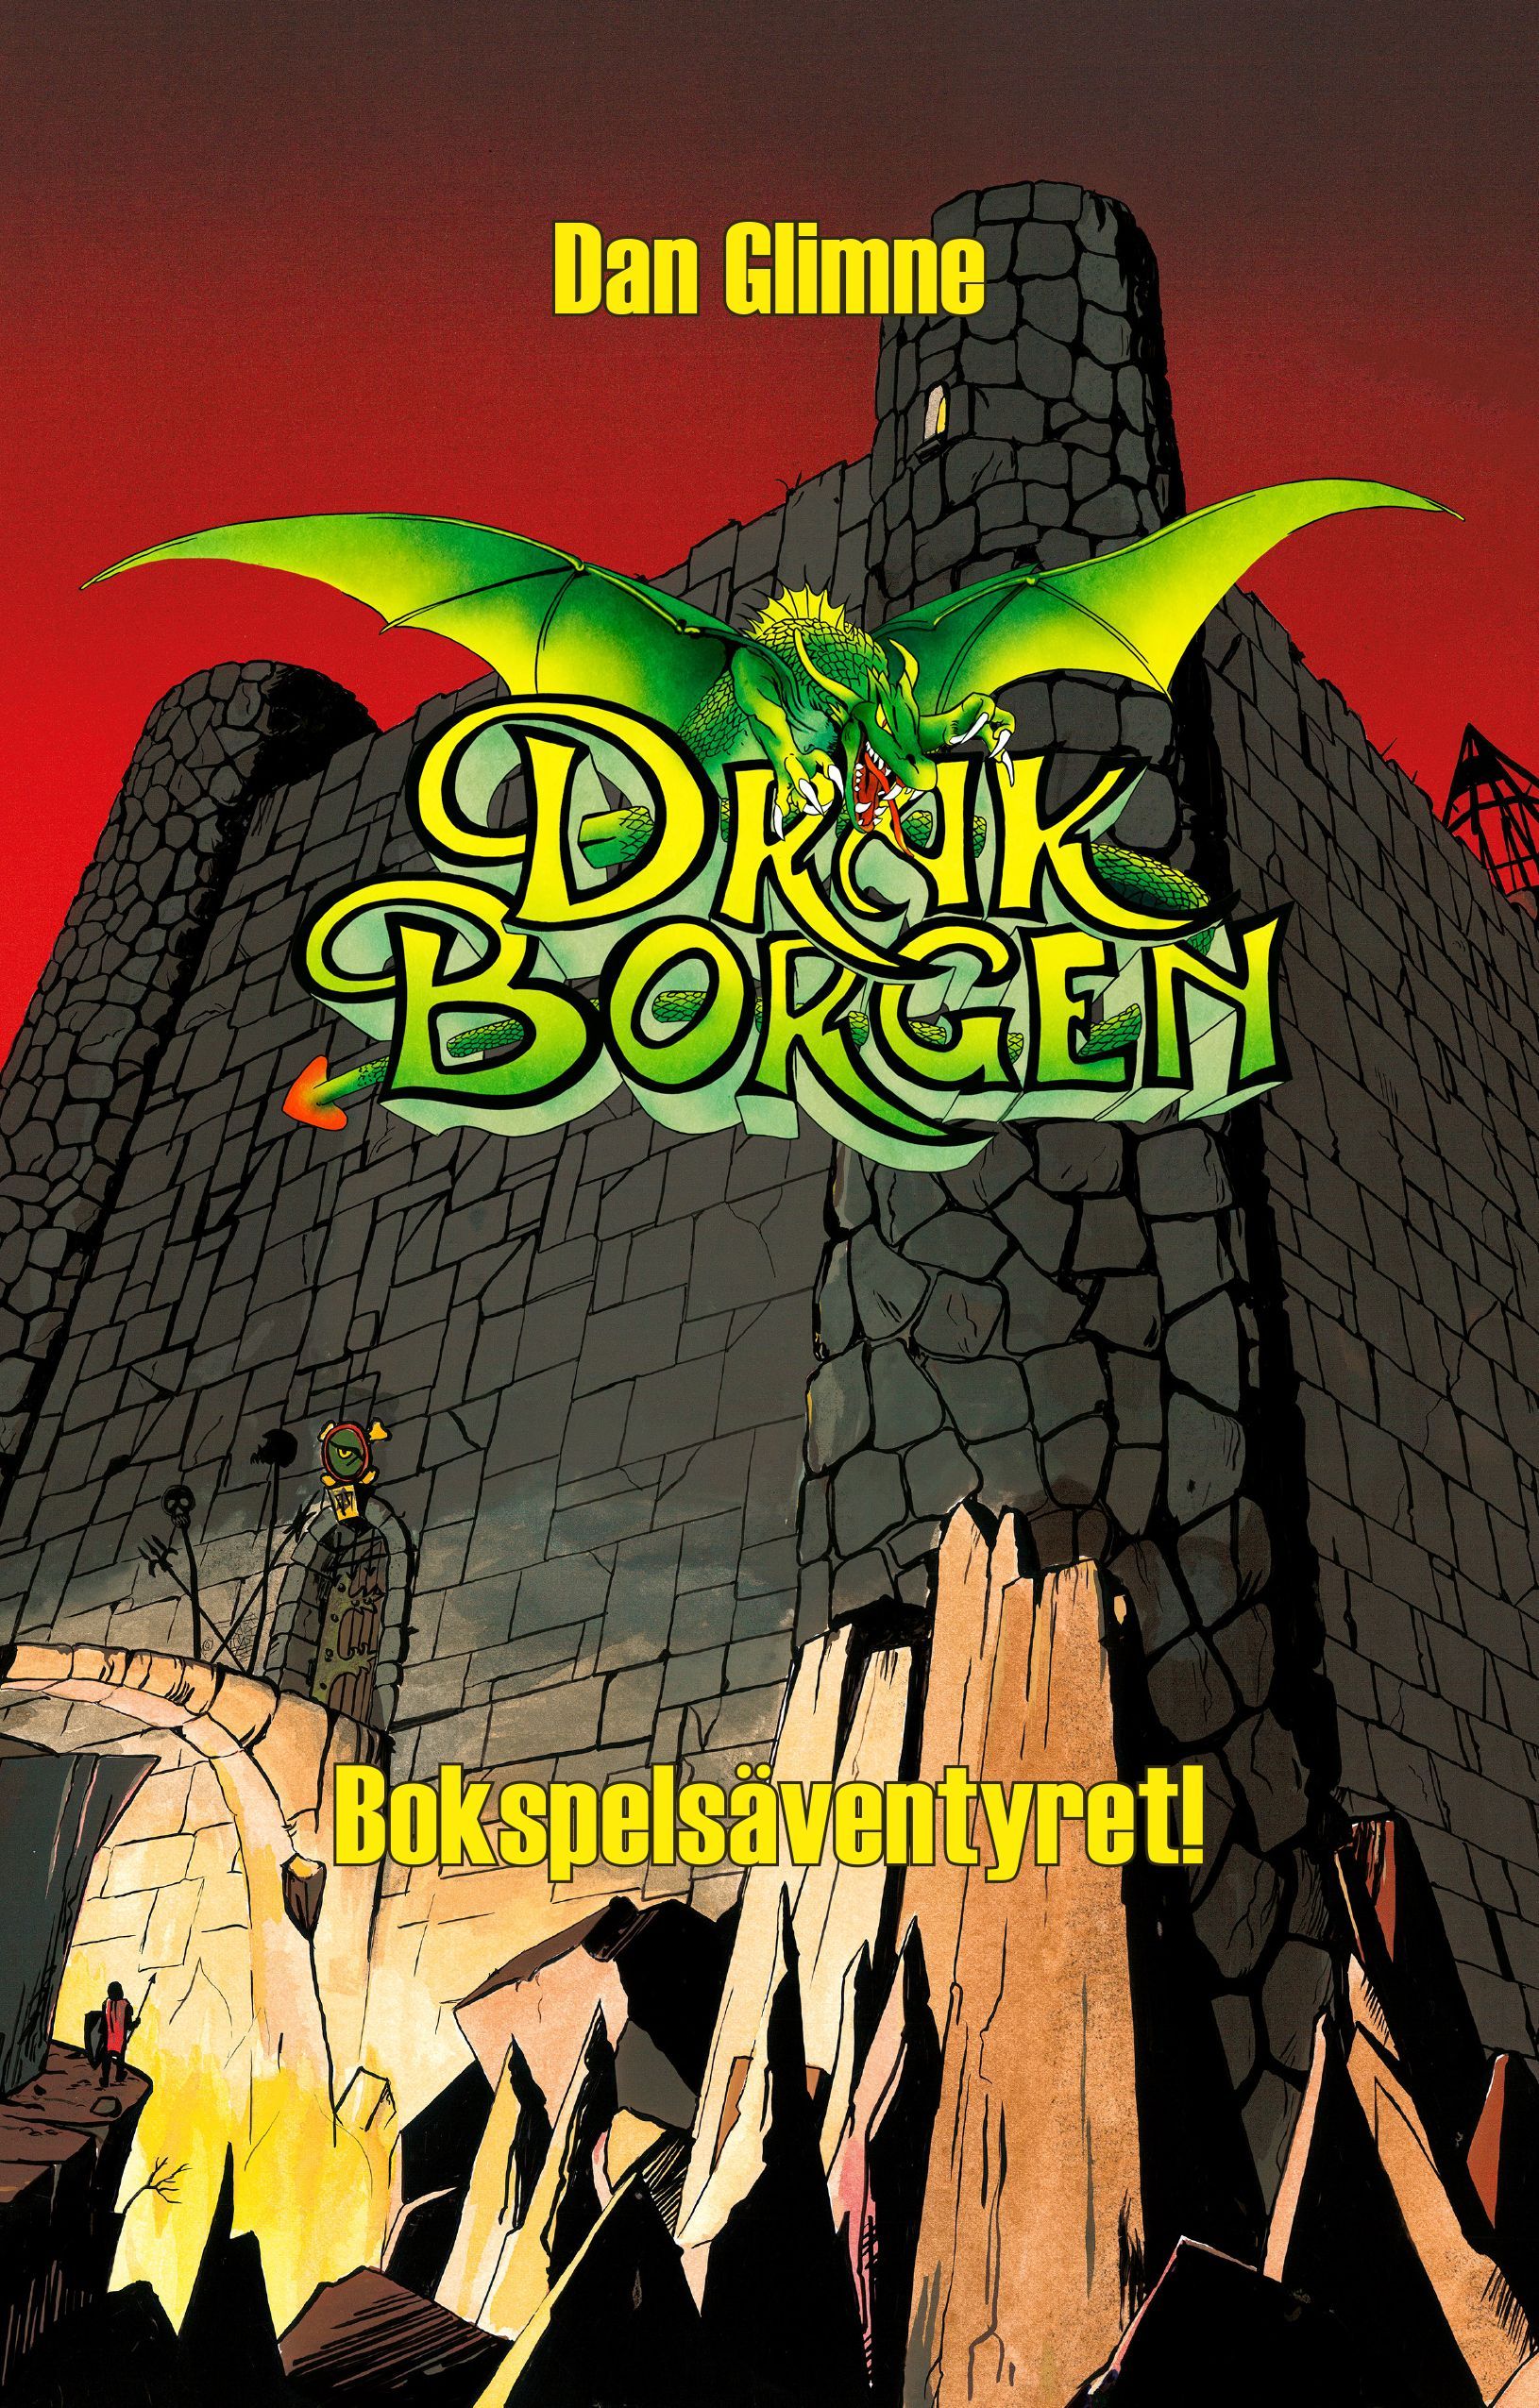 Boken Drakborgen: Bokspelsäventyret! är skriven av Dan Glimne på Stevali Bokförlag.